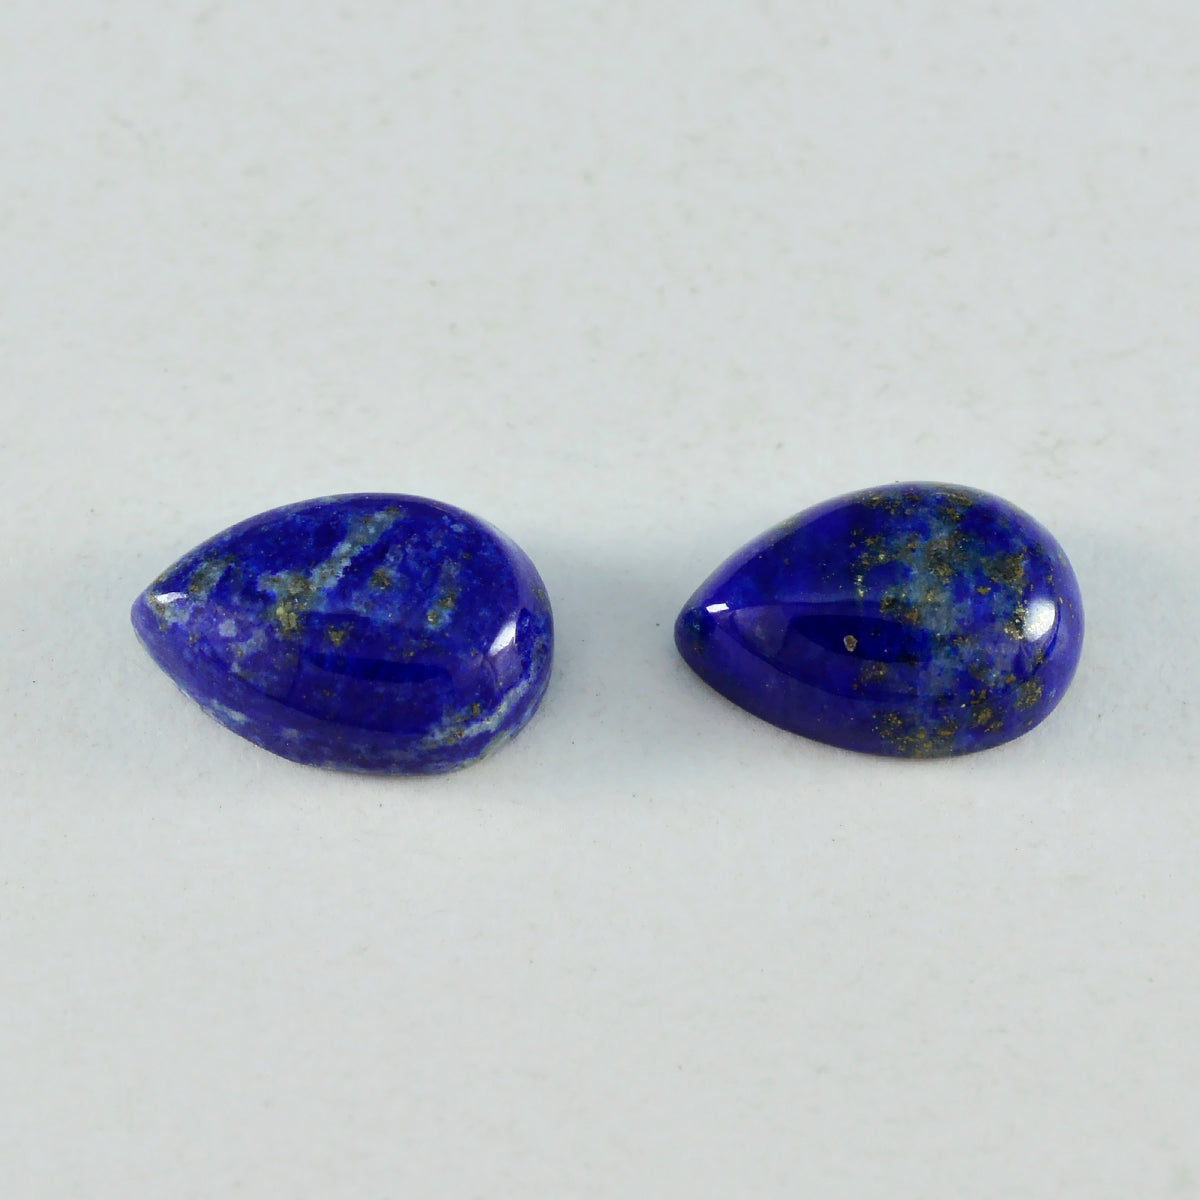 Riyogems 1 pieza cabujón de lapislázuli azul 10x14 mm forma de pera hermosa gema de calidad